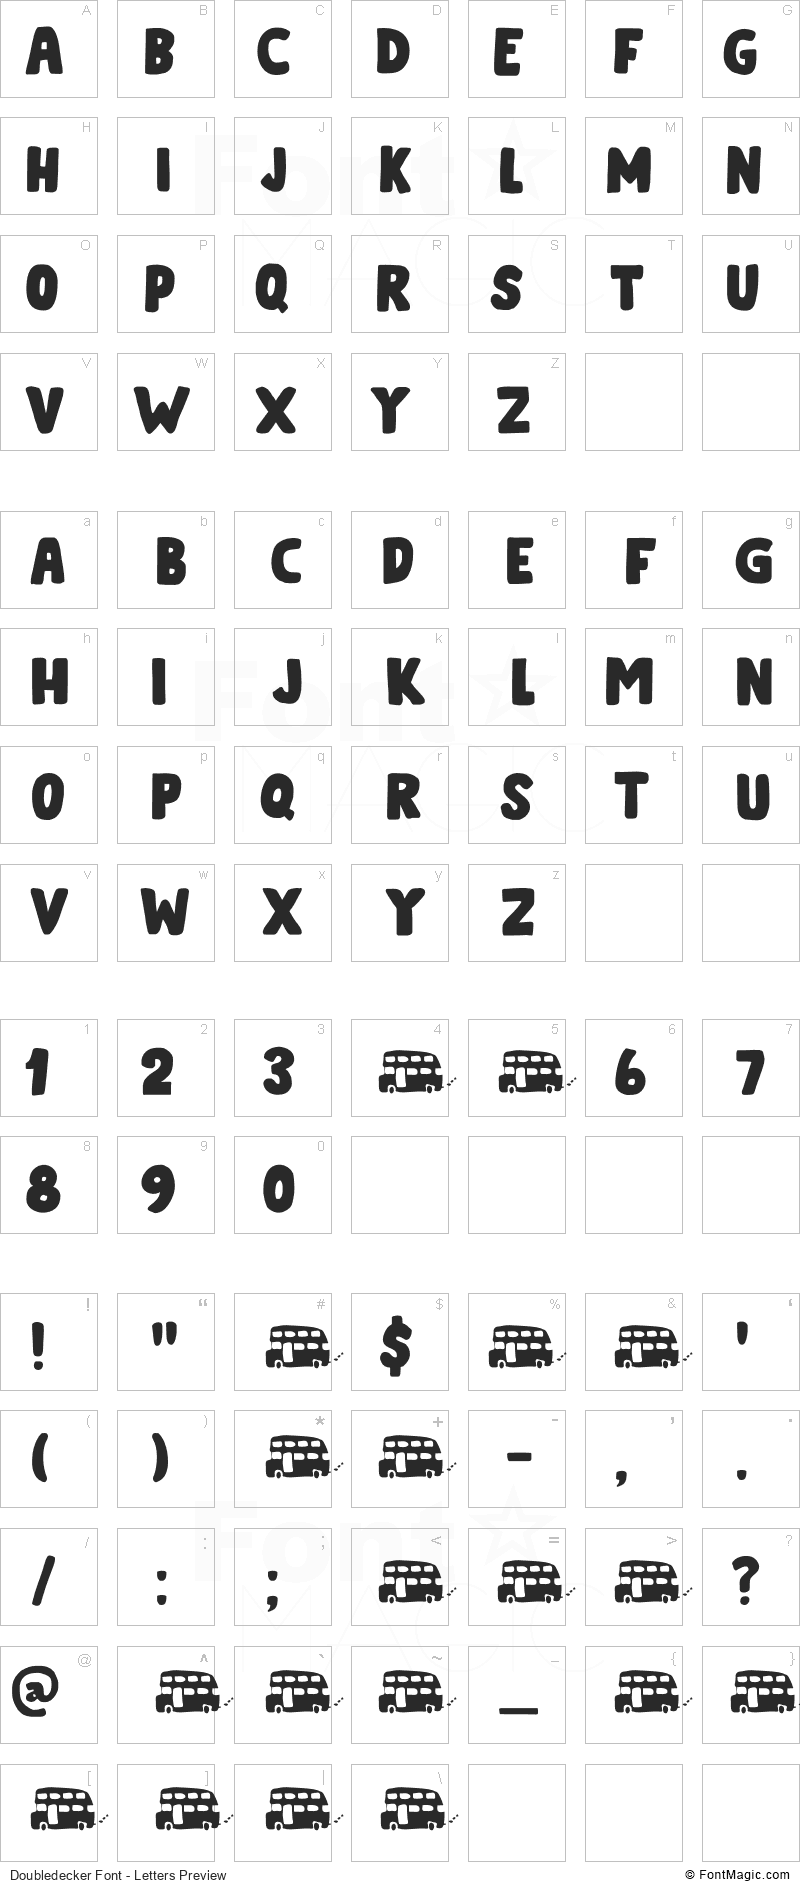 Doubledecker Font - All Latters Preview Chart